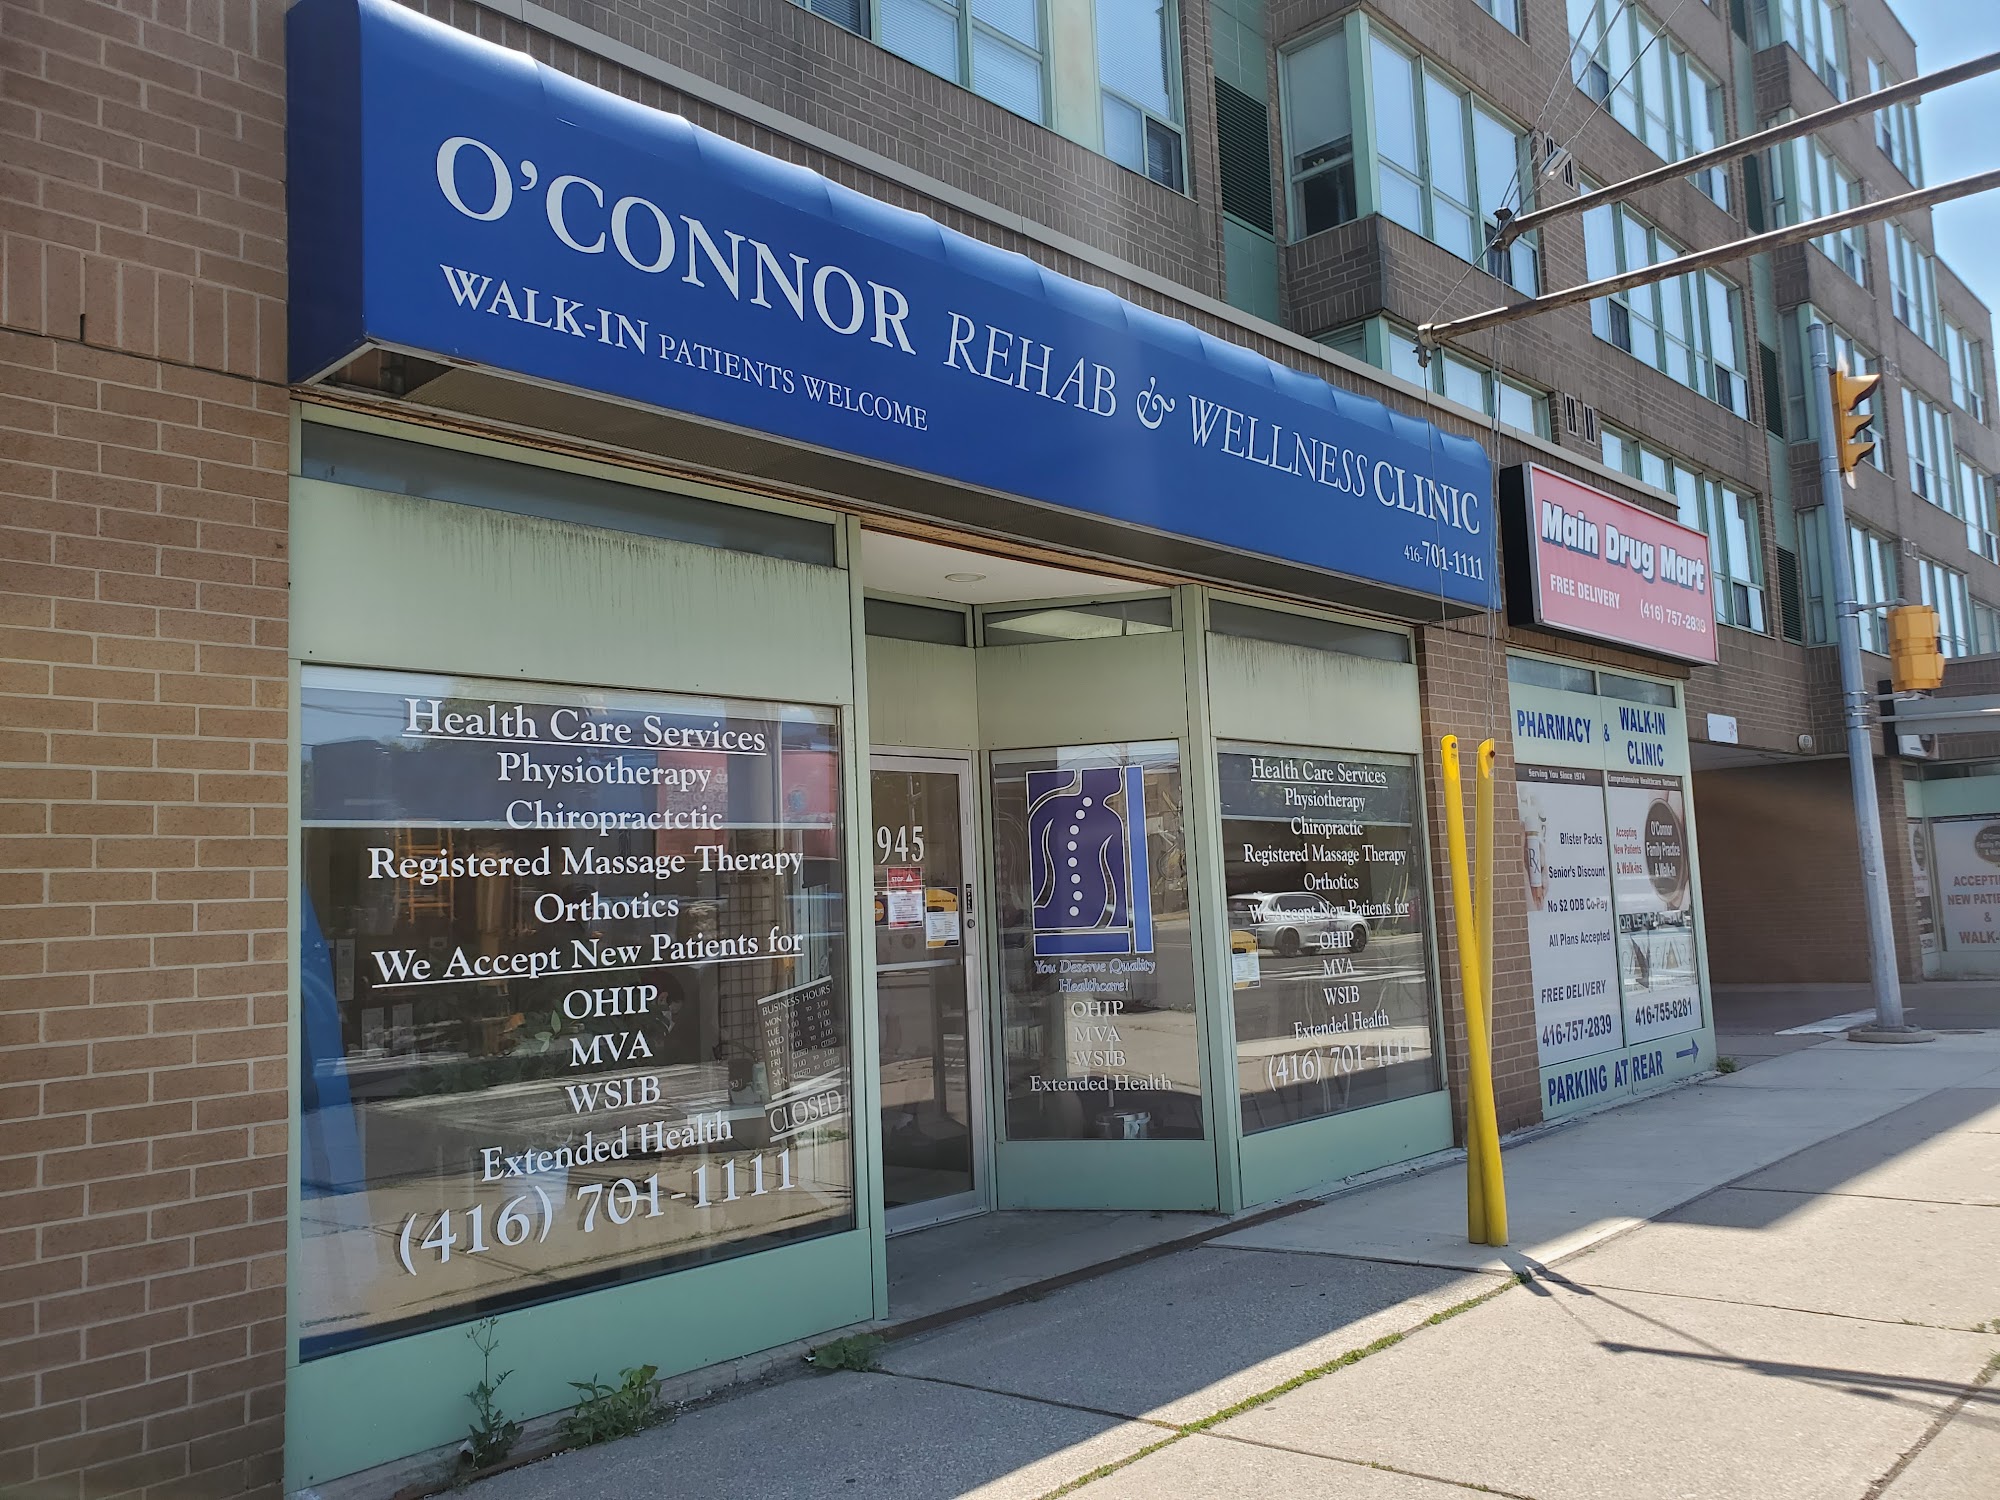 O'Connor Rehab & Wellness Clinic